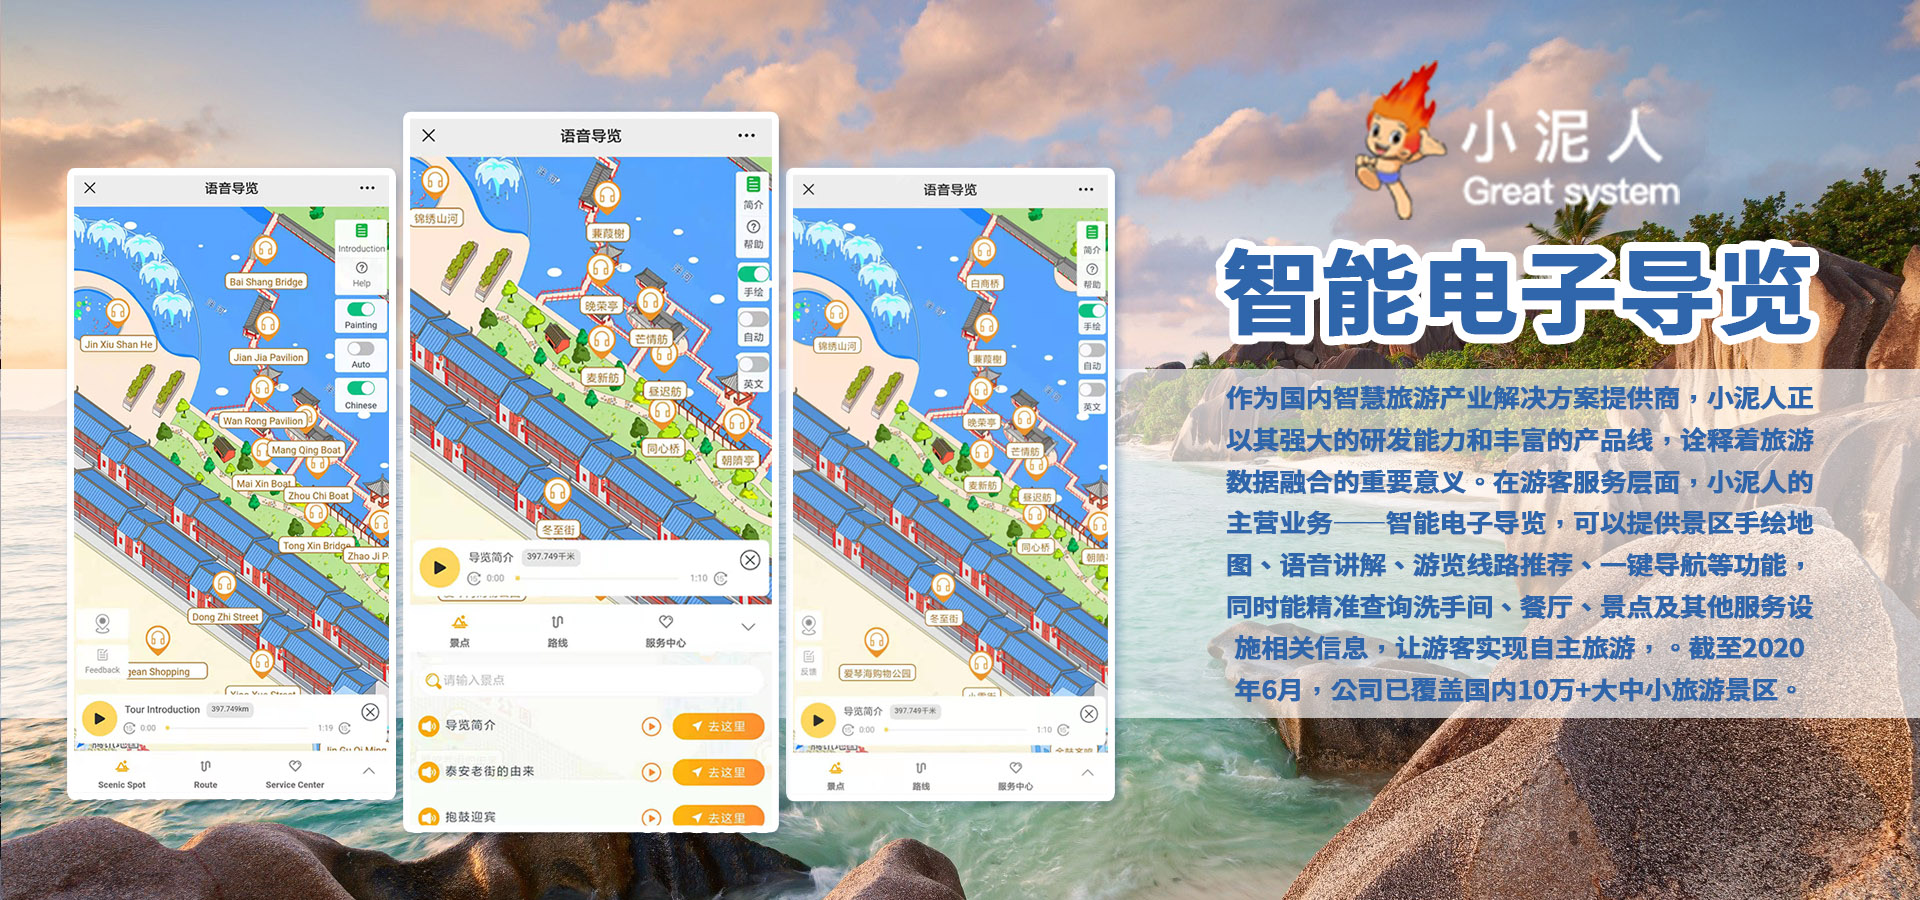 武汉红色广场电子导览小程序制作上线.jpg